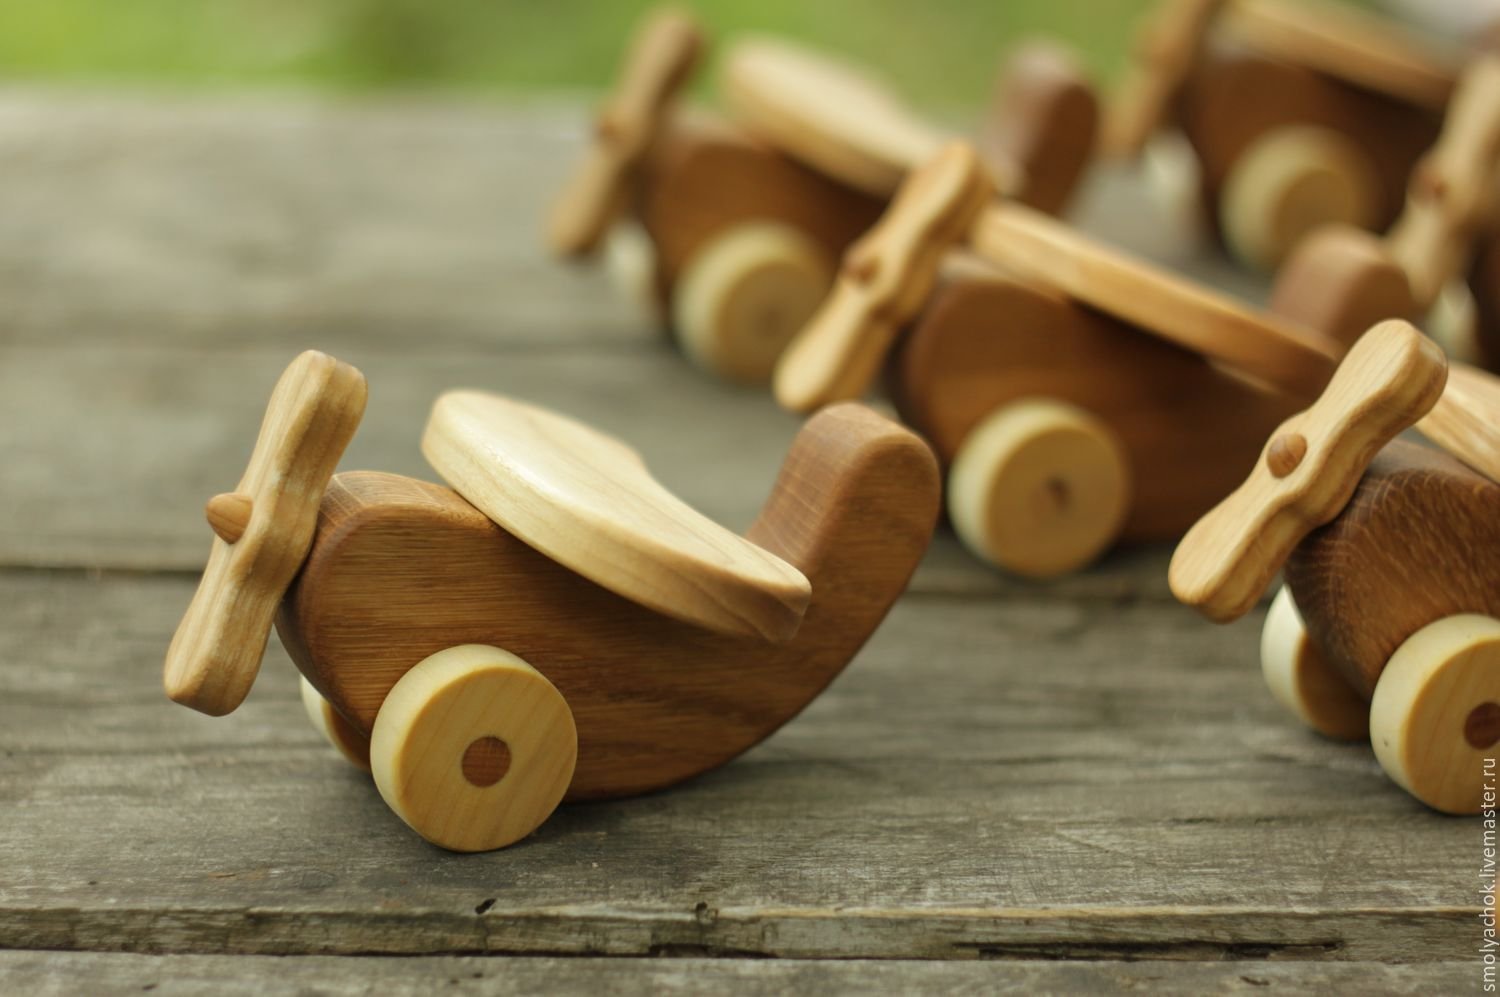 И т д деревянная. Деревянные игрушки. Игрушки из дерева. Игрушки из дерева для детей. Изделия из древесины.